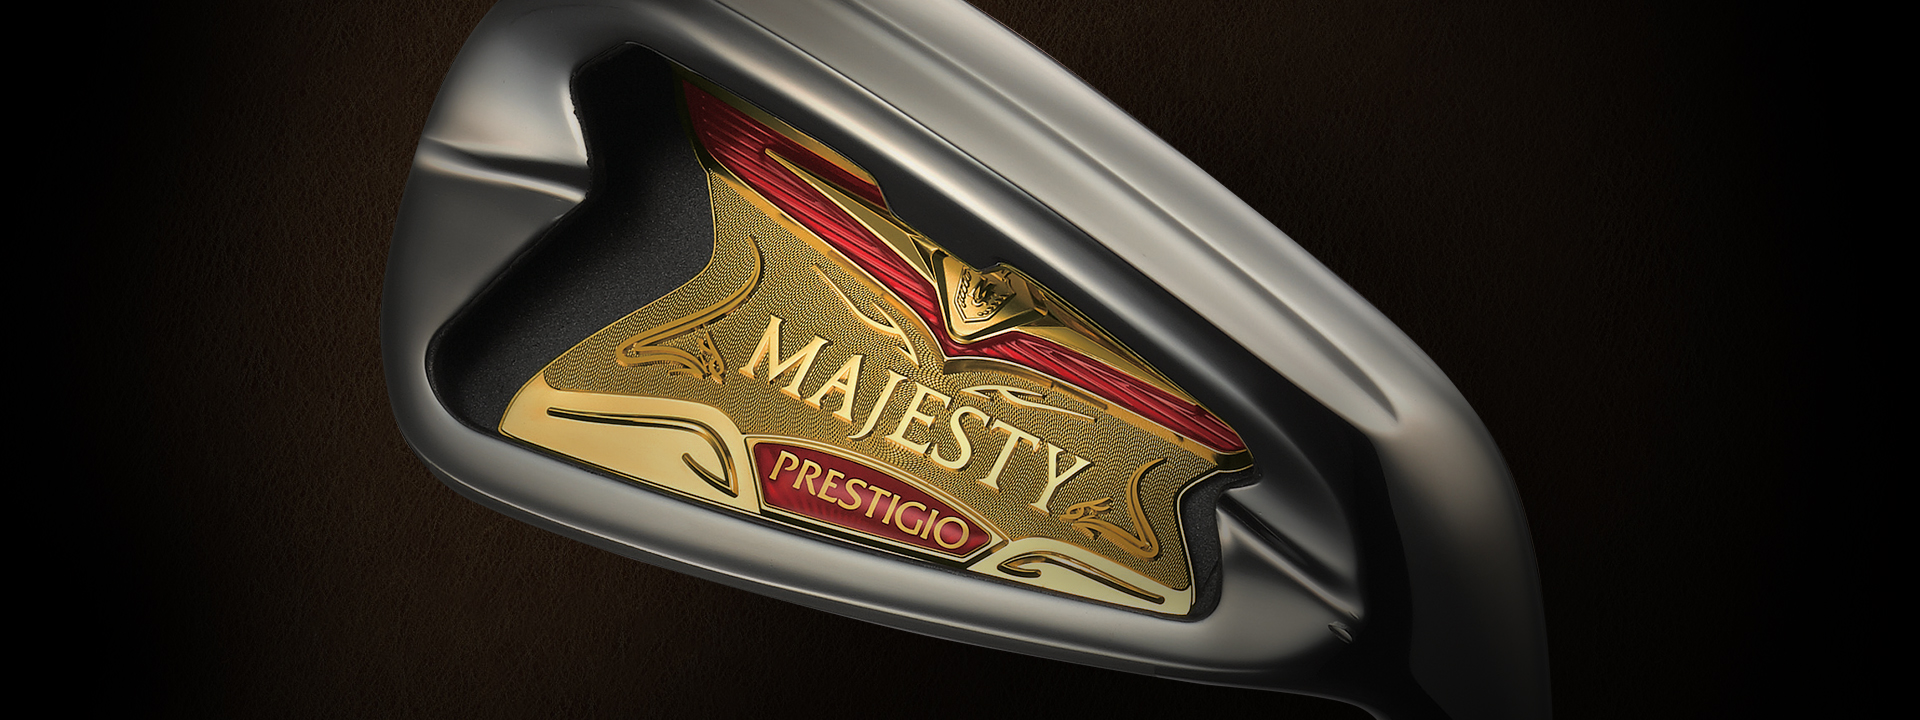 MAJESTY PRESTIGIO X IRON | Majesty